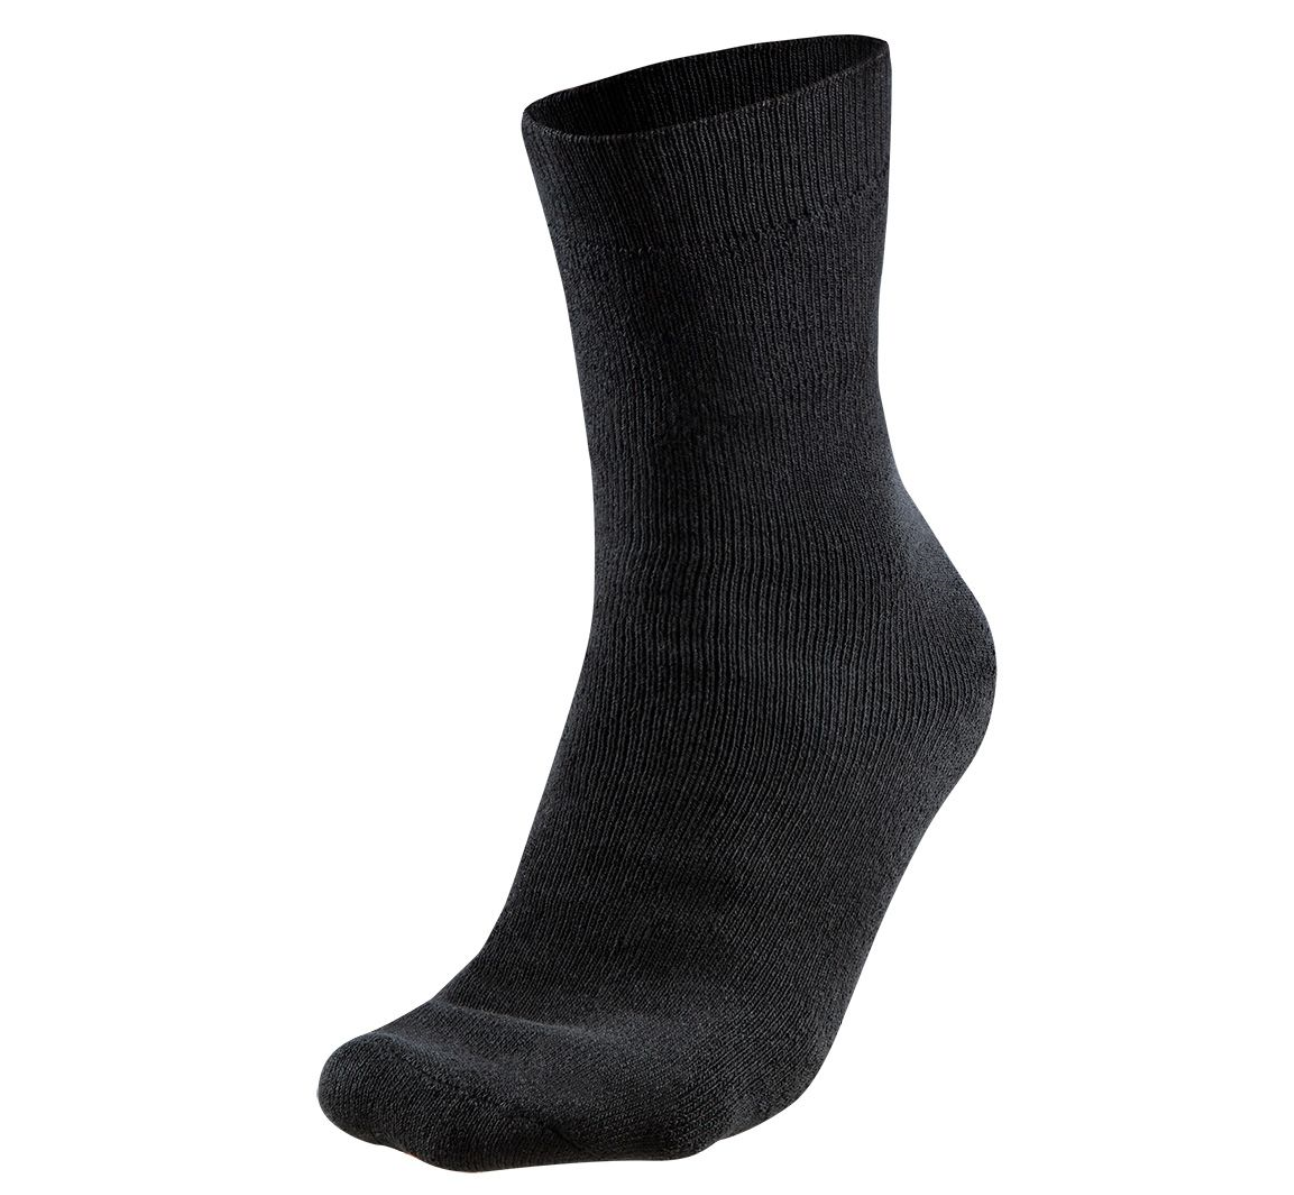 Ponožky èerné, 3 páry, bavlnìné - zvìtšit obrázek